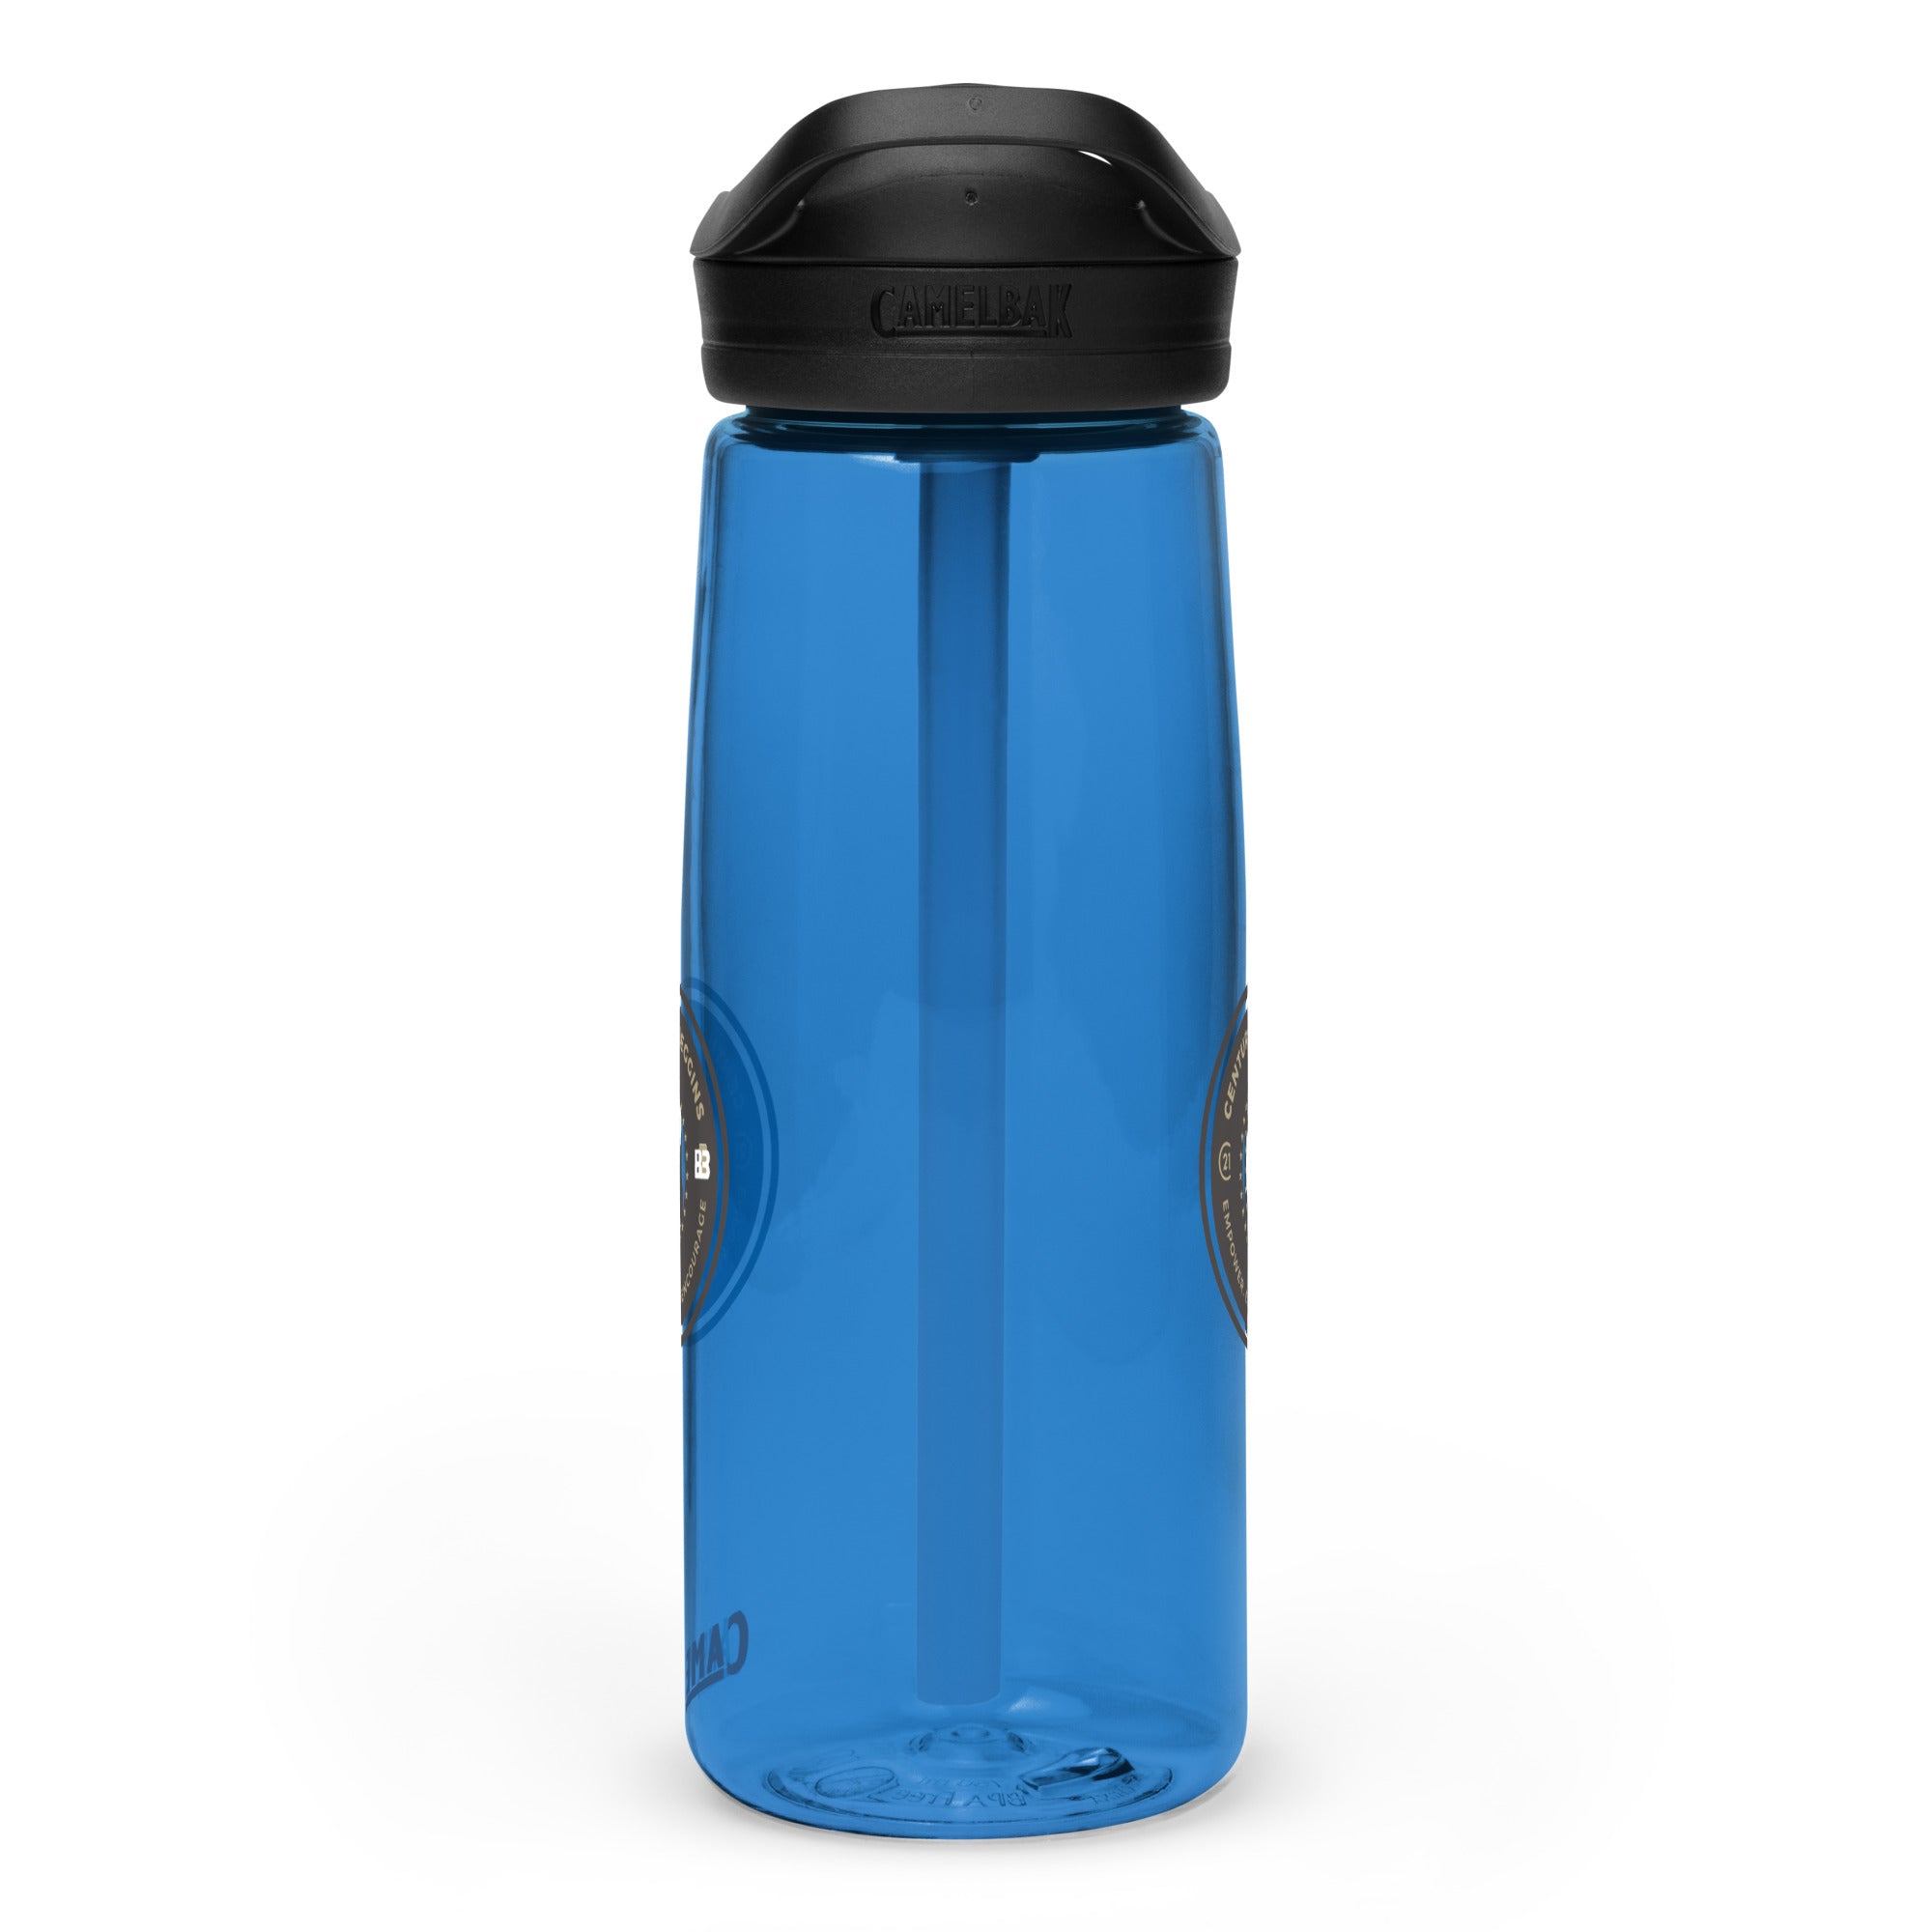 C21 Beggins Sports water bottle